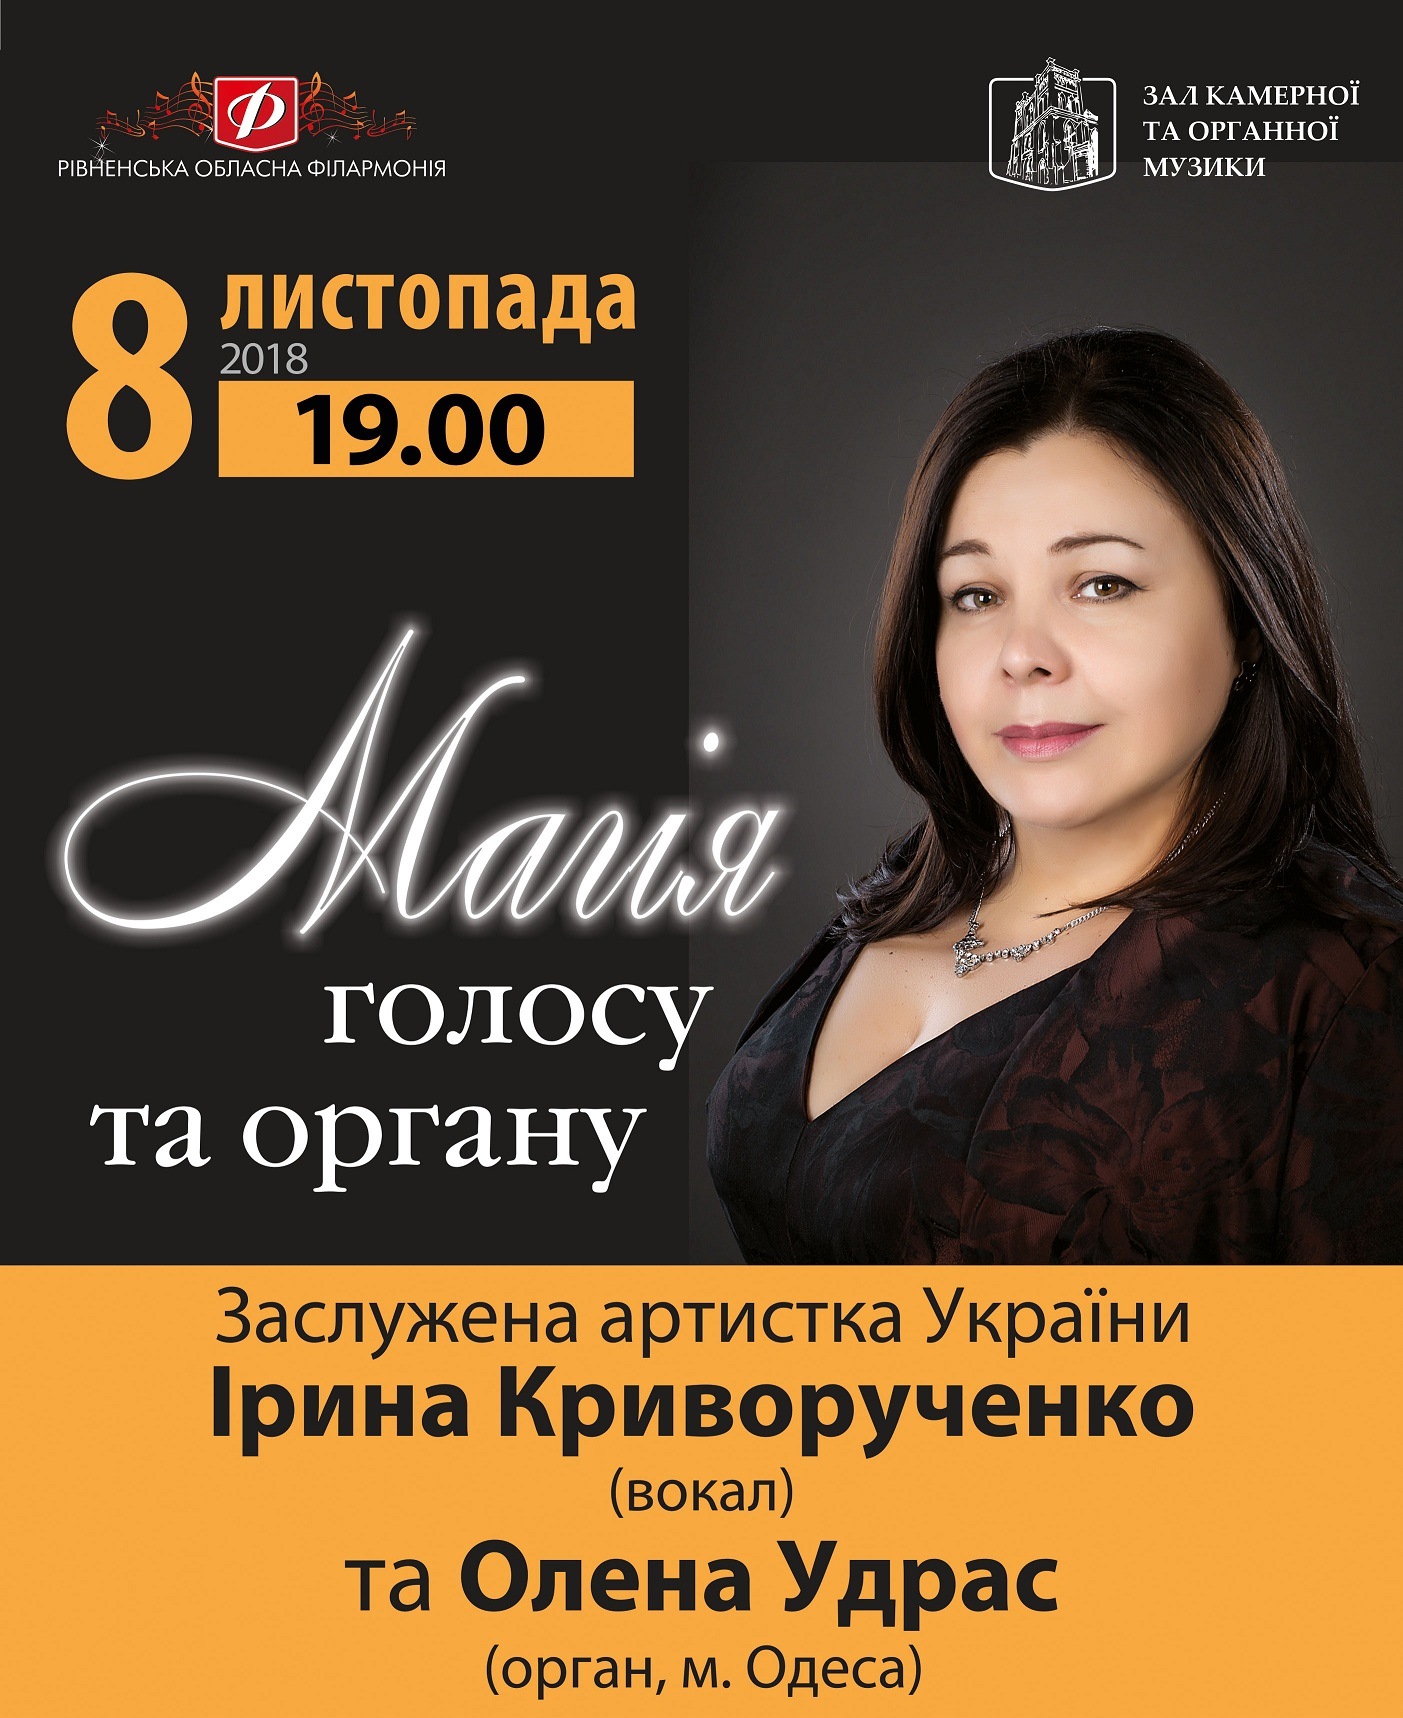 Заслужена артистка України виступить сьогодні в органному залі